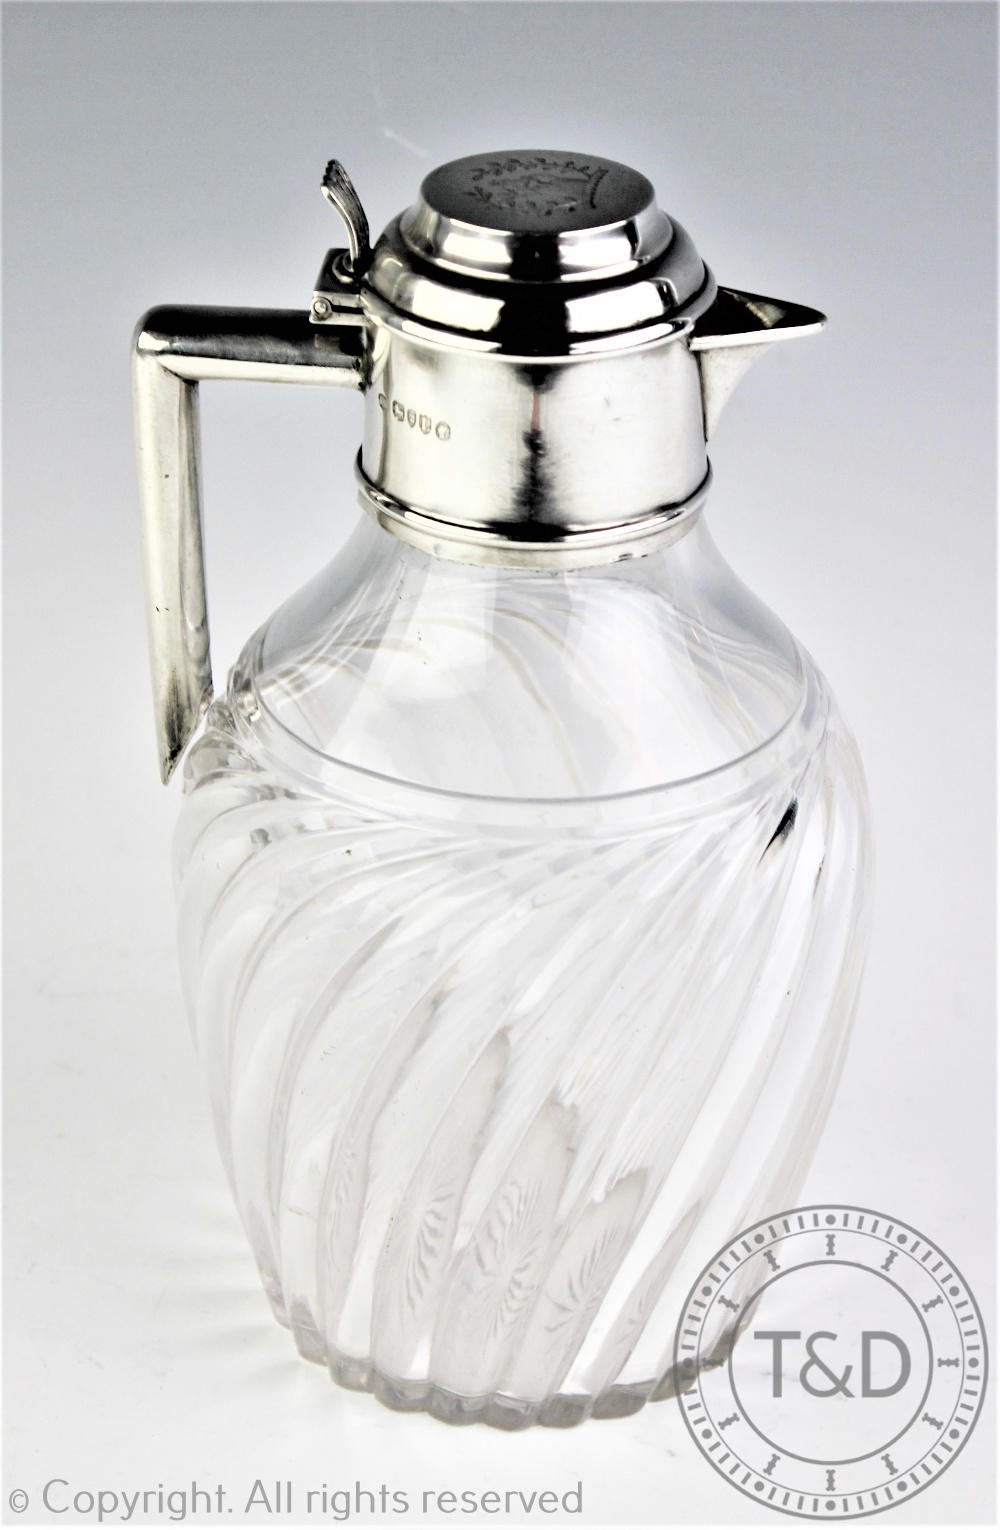 A Victorian silver mounted claret jug, Cornelius Joshua Vander, London 1886,